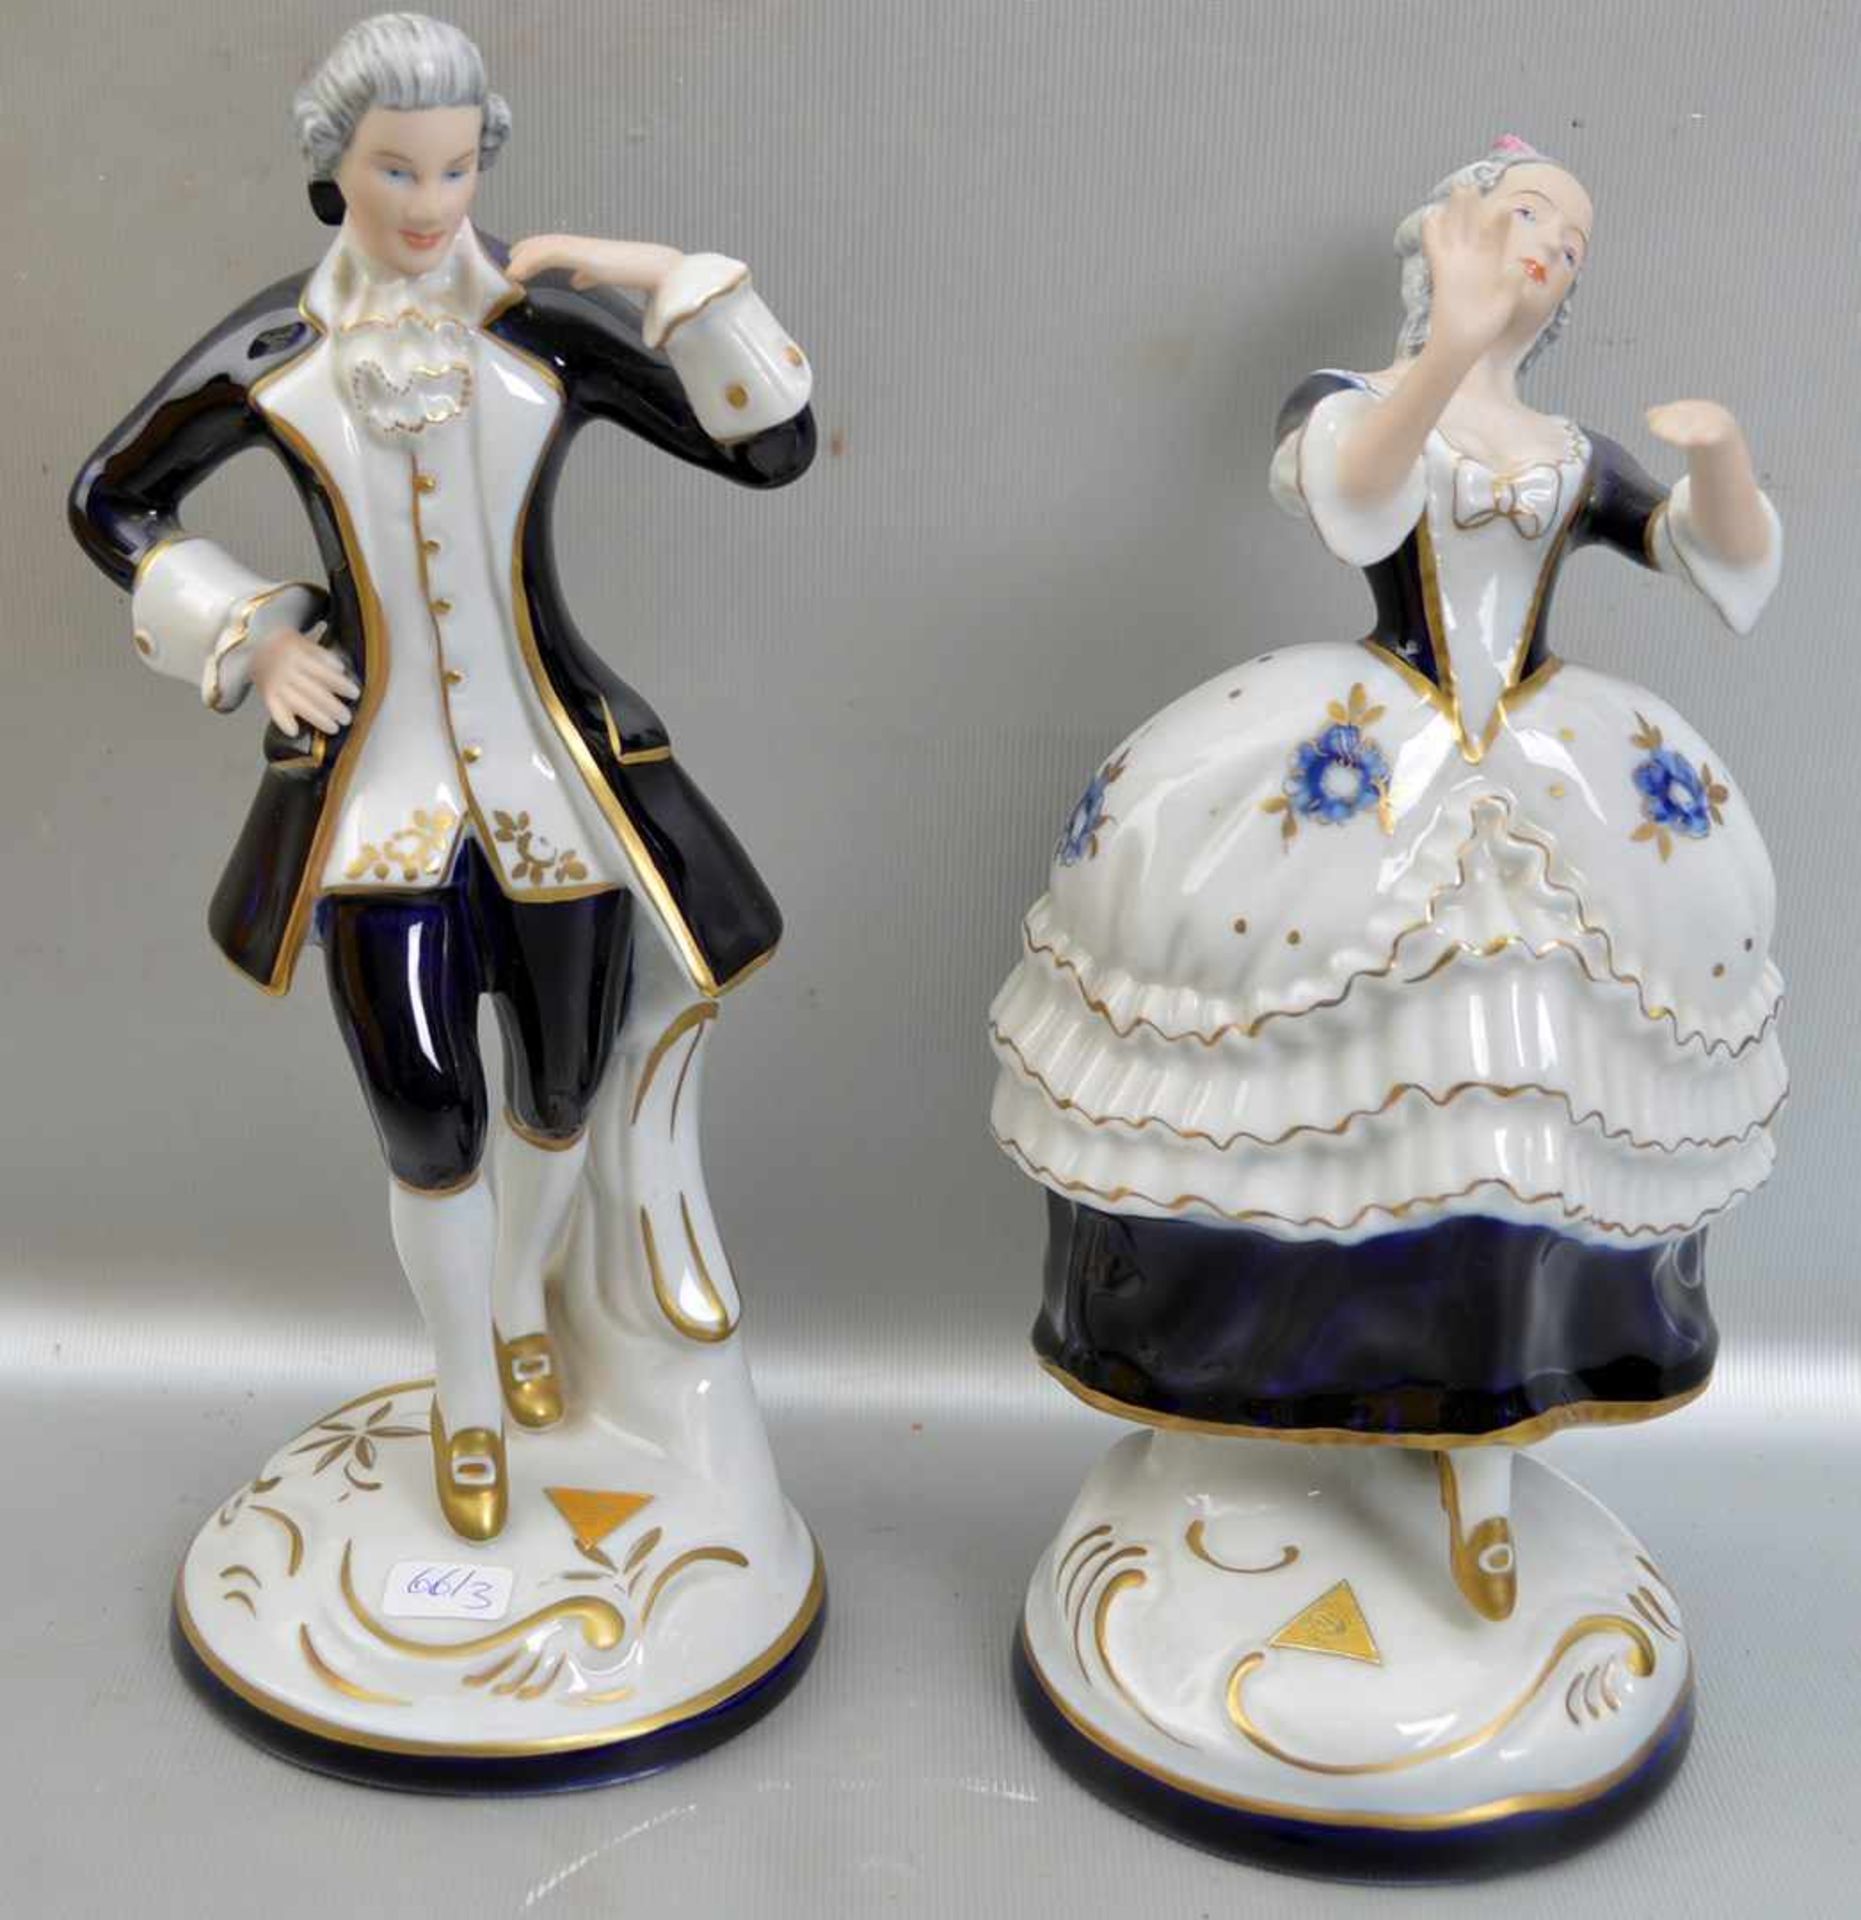 Elegantes Paar auf rundem Rocaillensockel stehend, Kavalier und Dame, gold und blau, sign. Wanke,